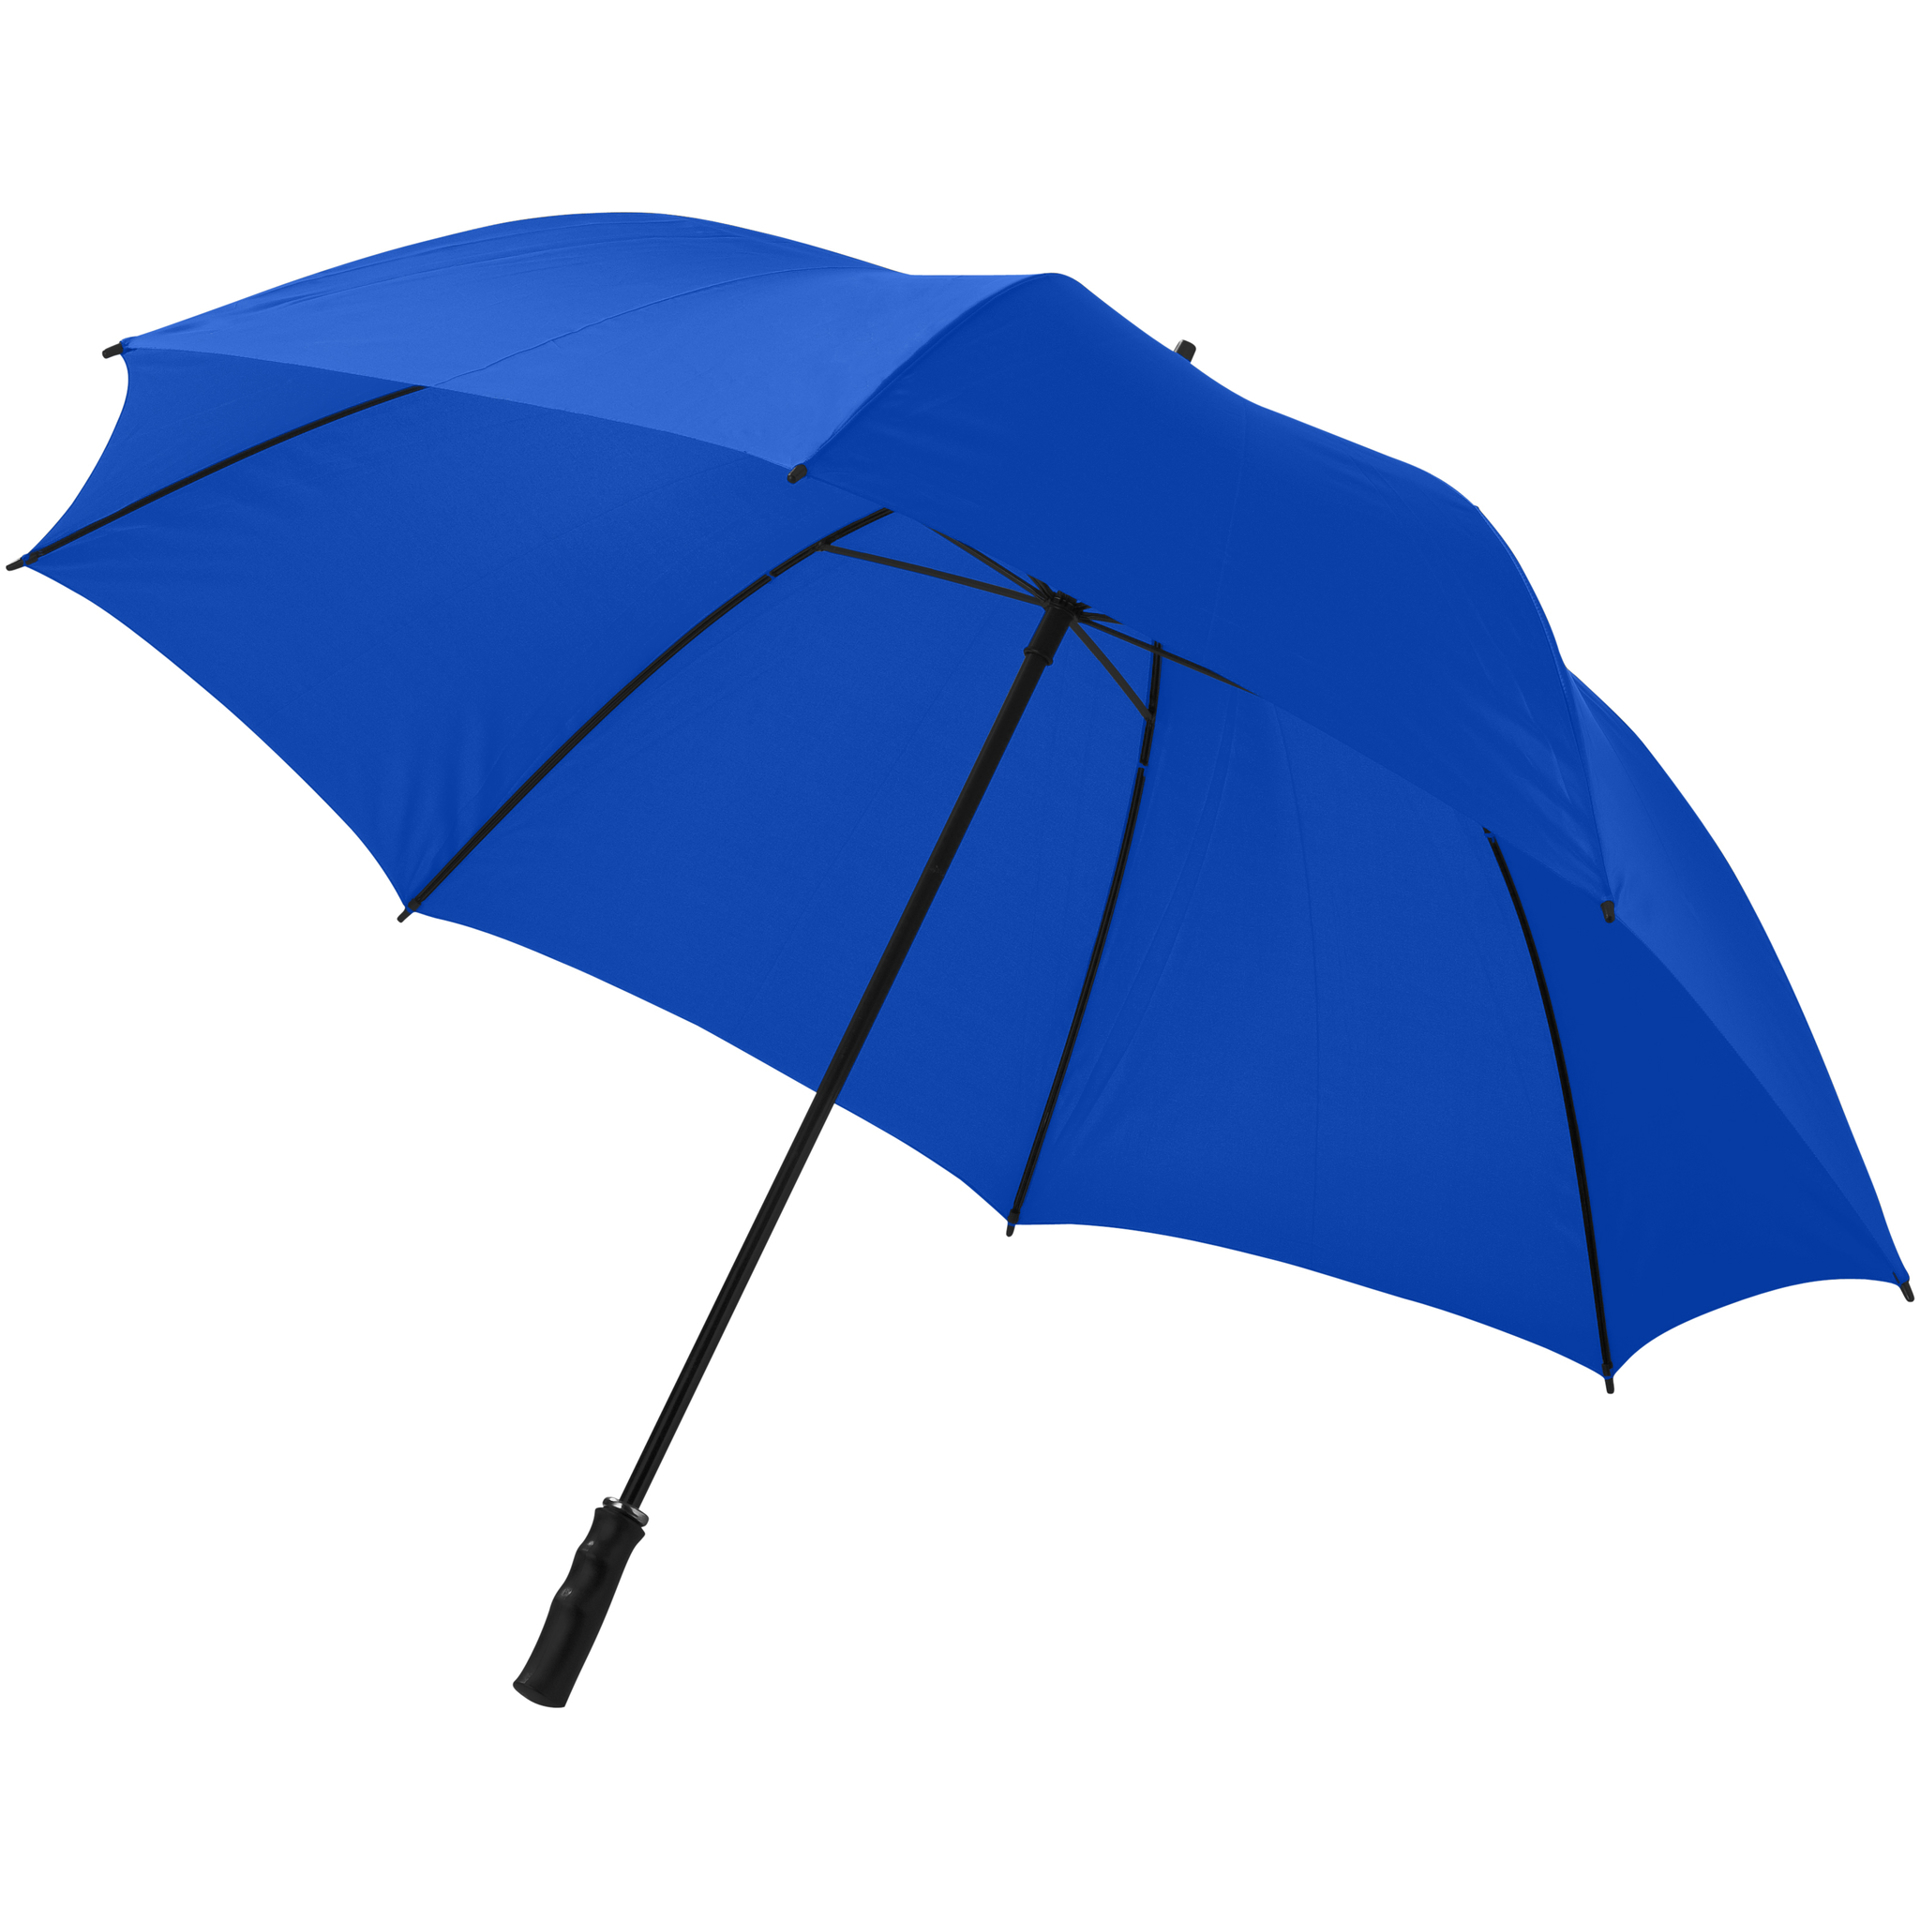 30 inch Golf Umbrella in blue